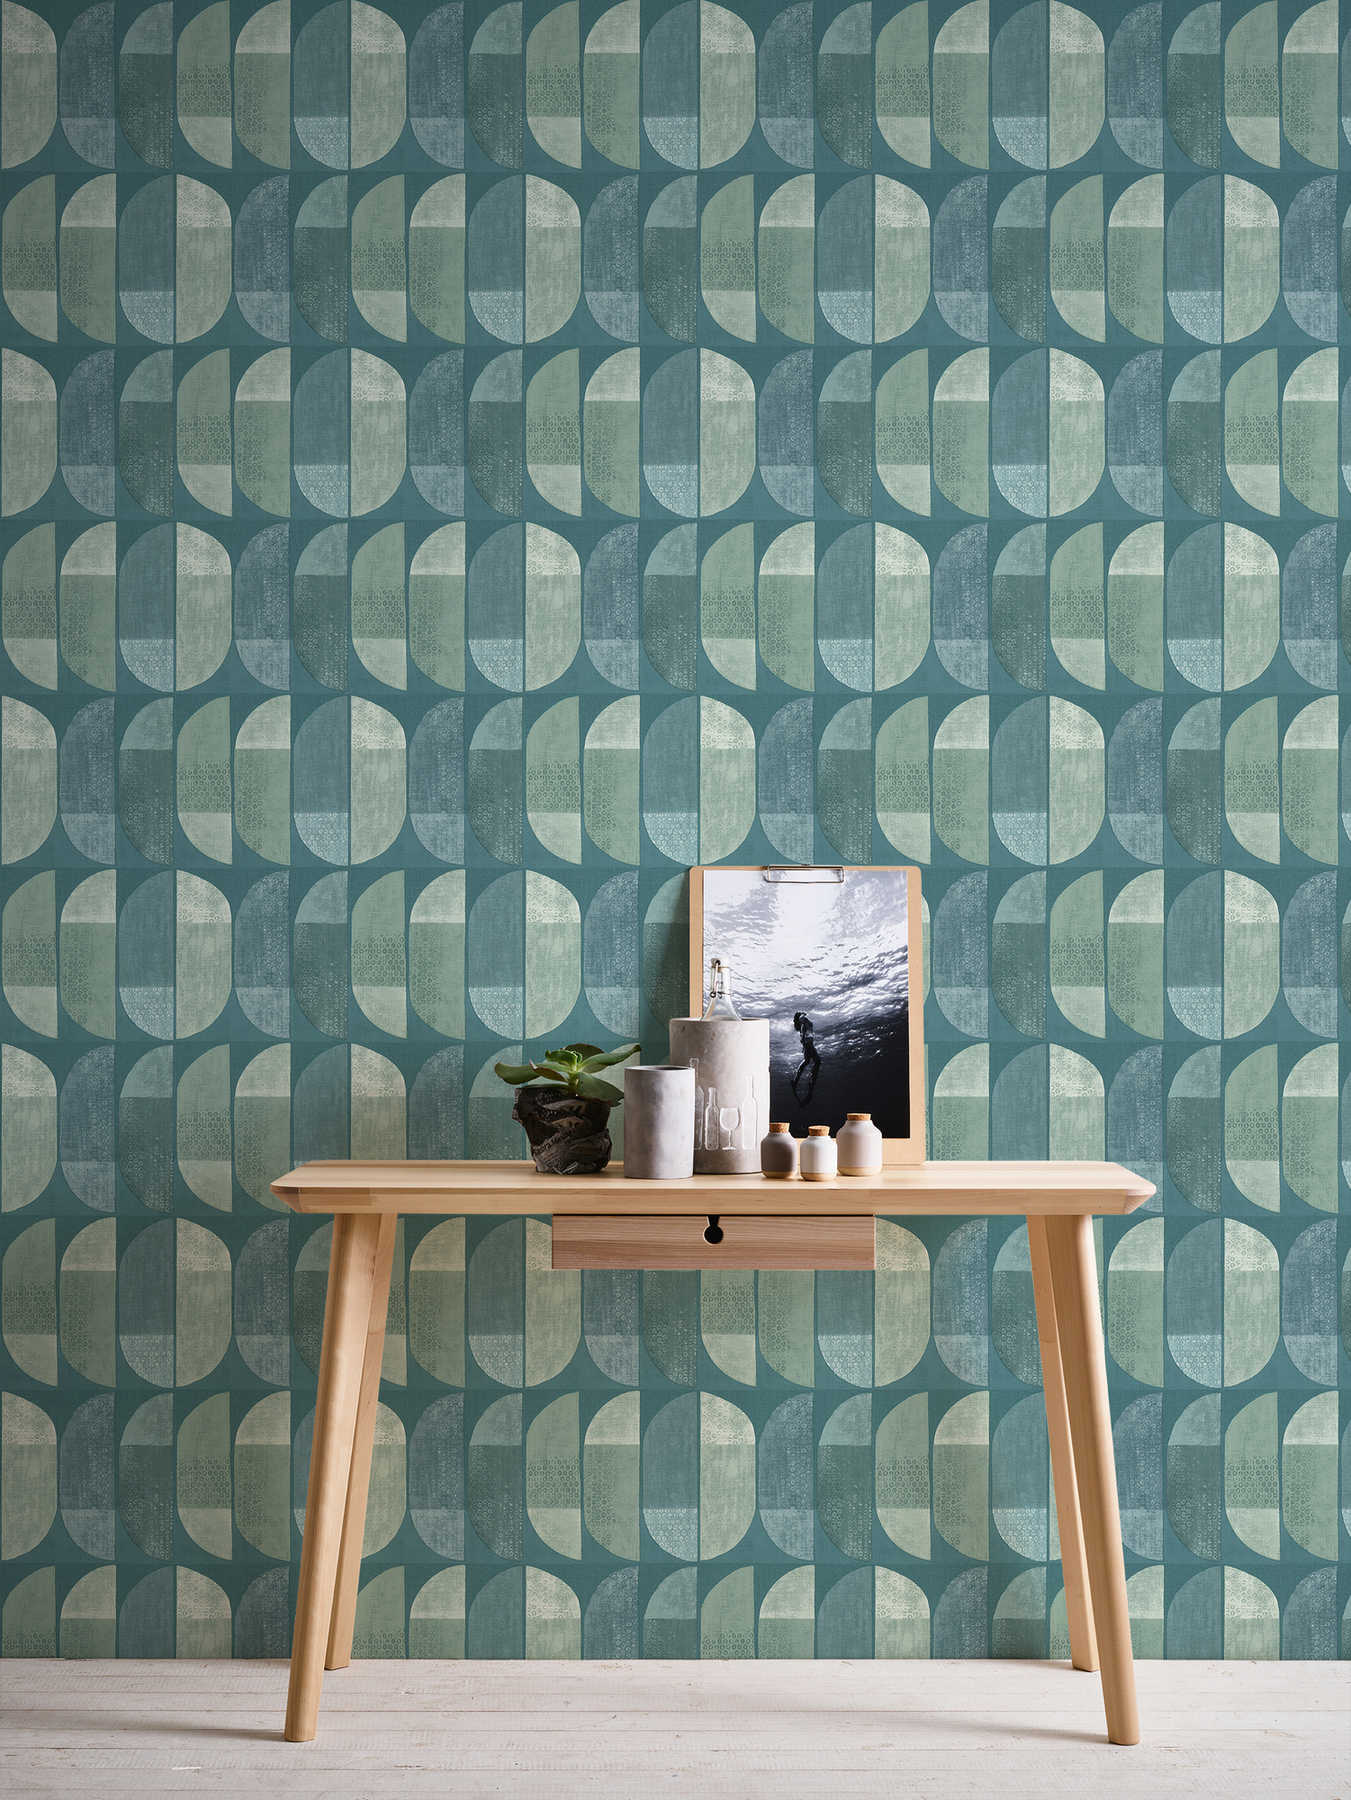             Wallpaper geometric retro pattern, Scandinavian style - blue, green
        